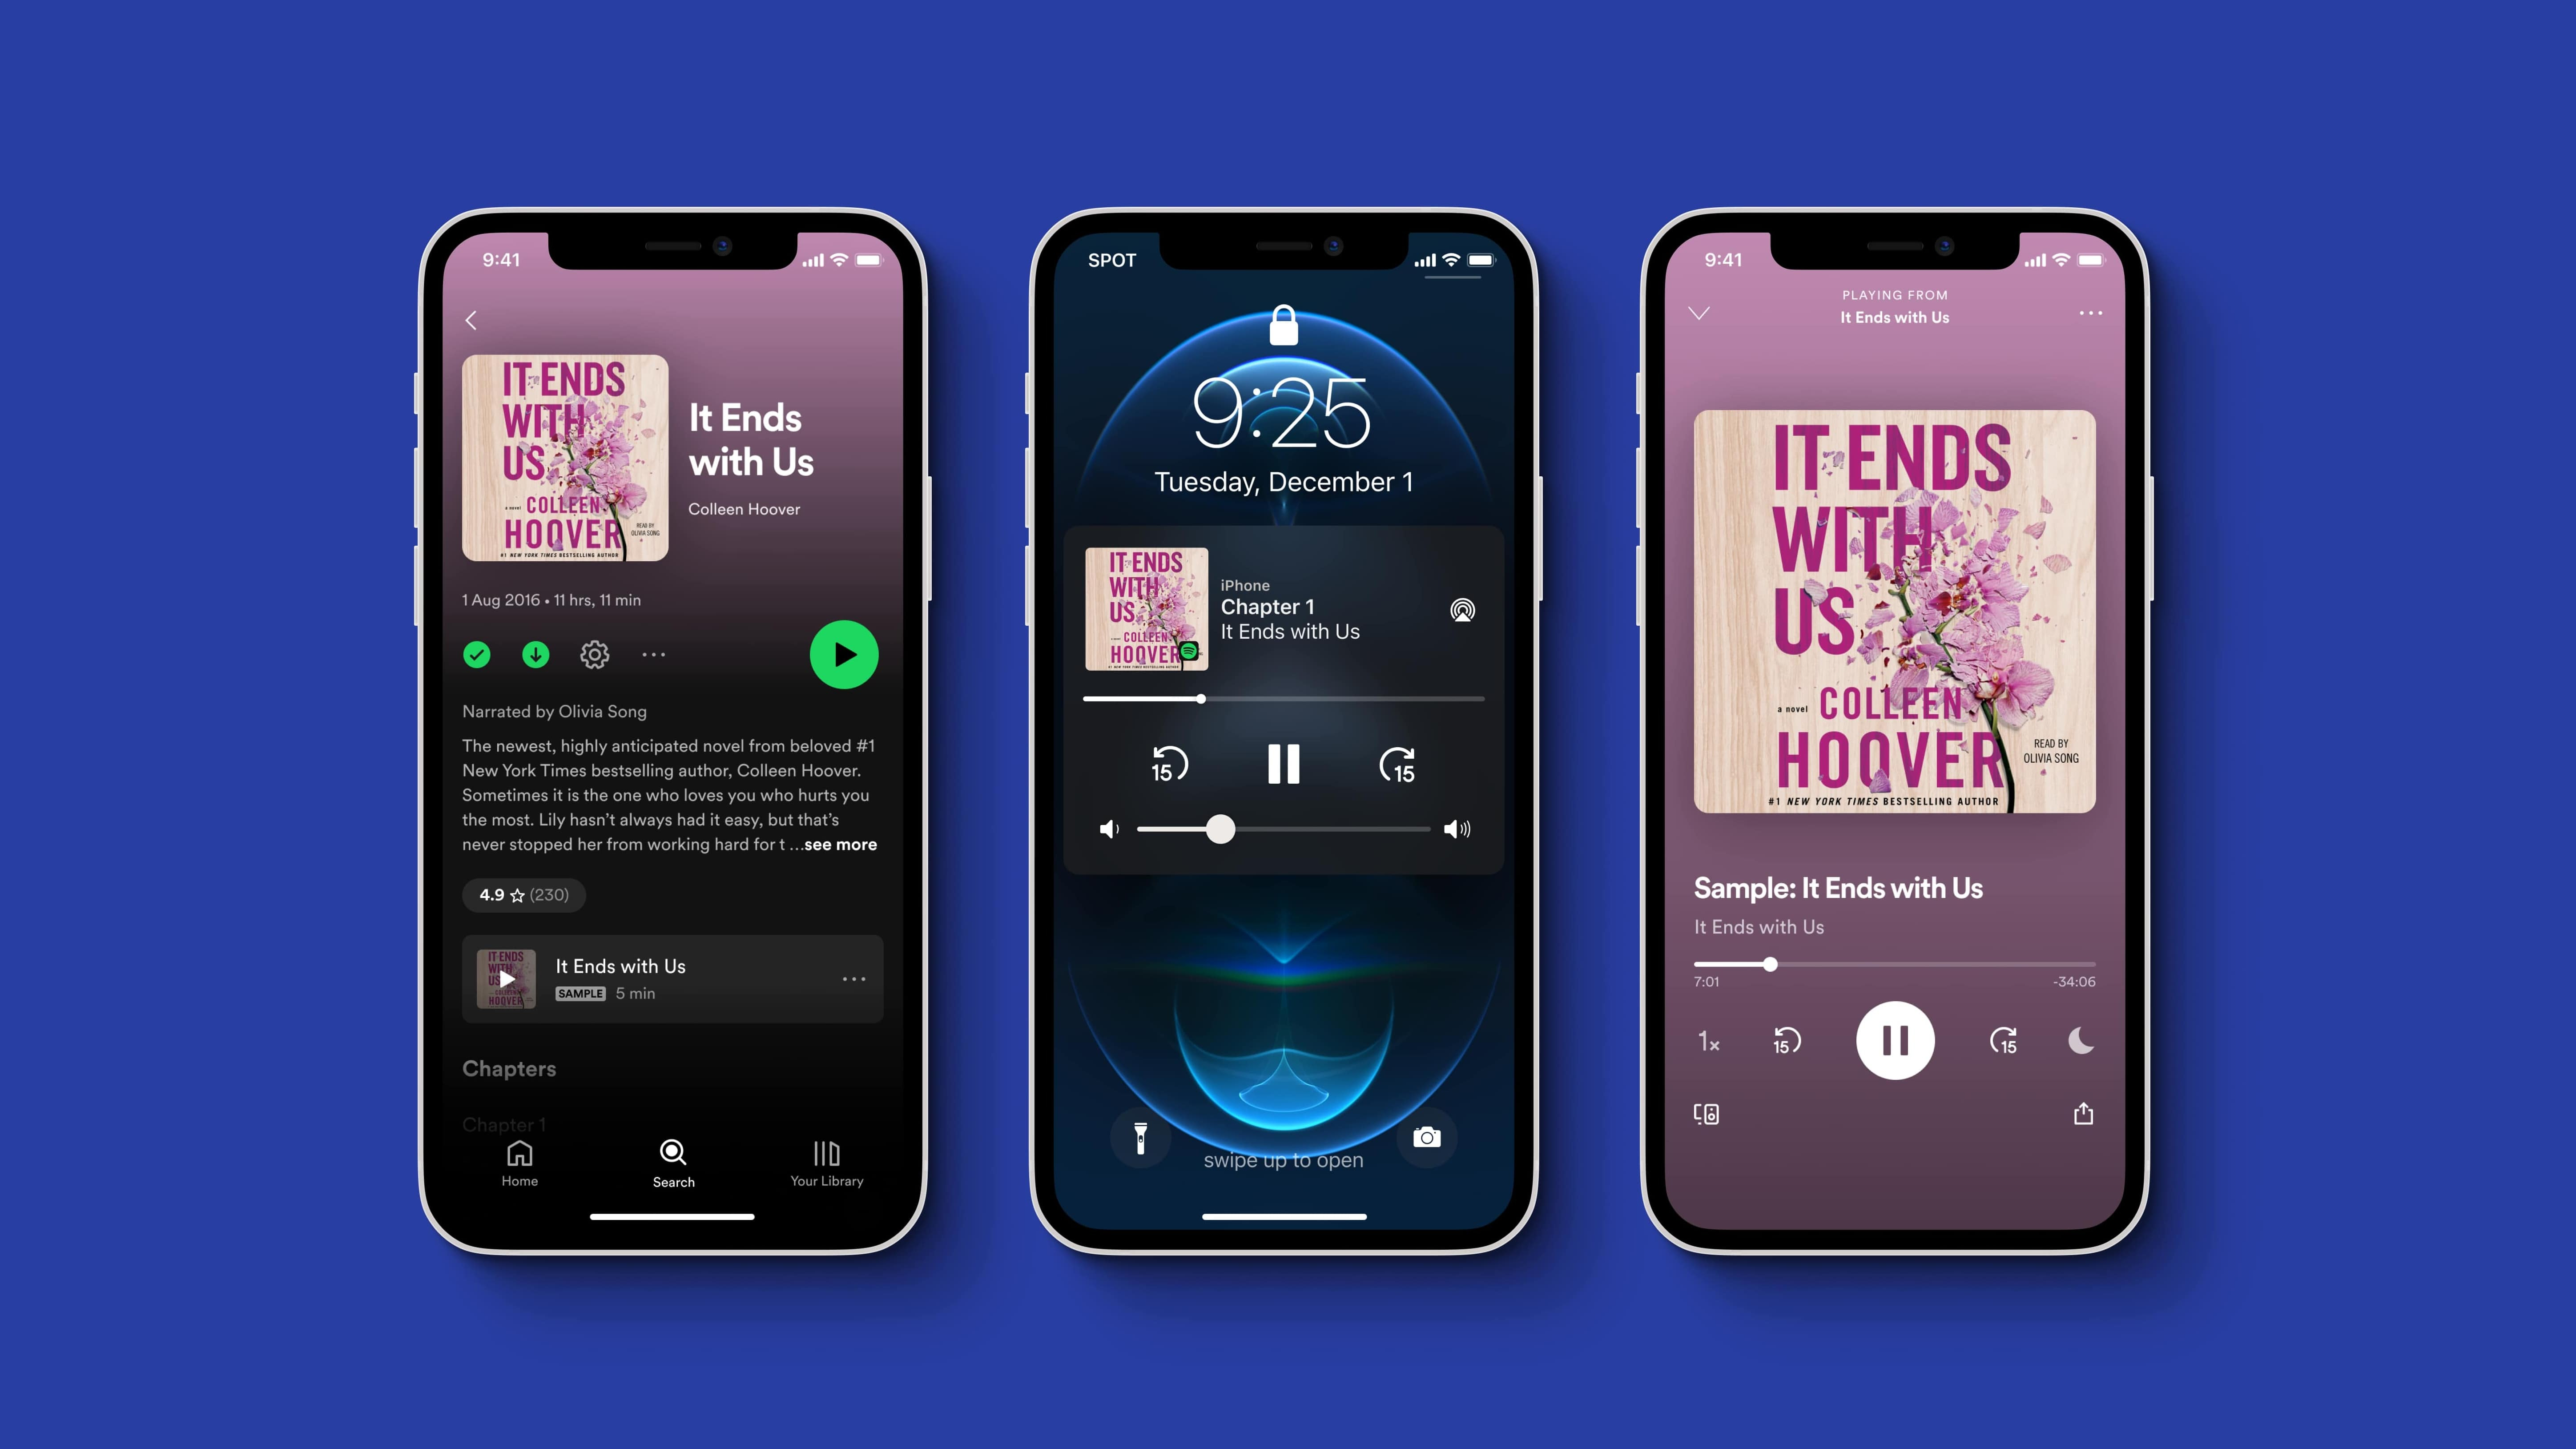 Spotify запускает аудиокниги в попытке свергнуть Audible от Amazon